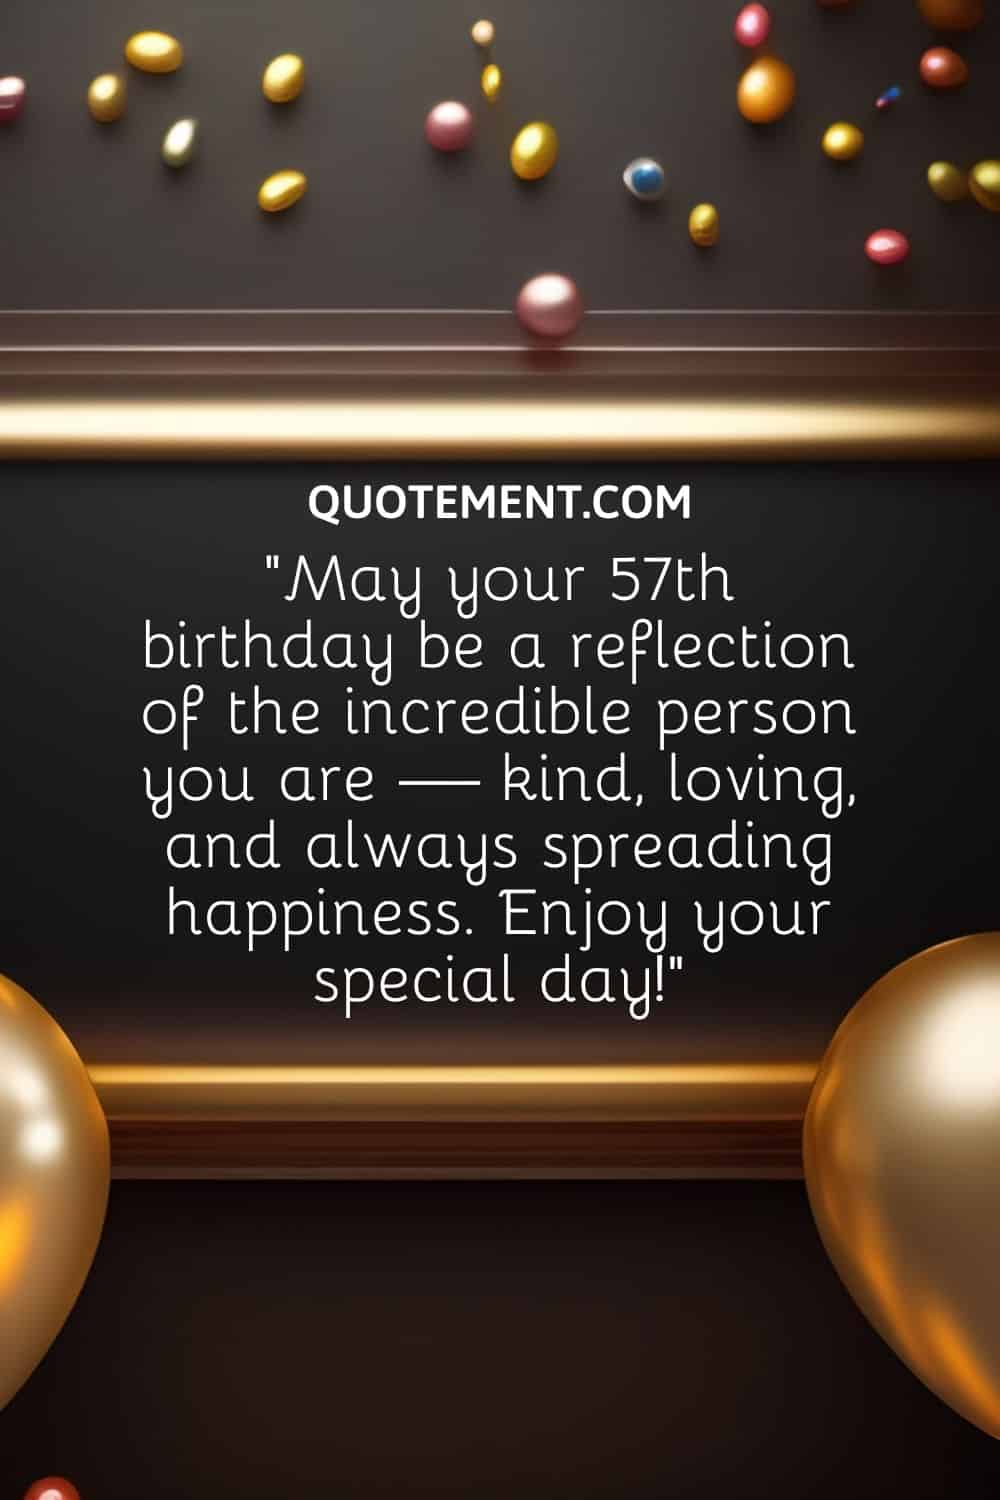 globos de cumpleaños que representan la forma más bonita de decir feliz 57 cumpleaños